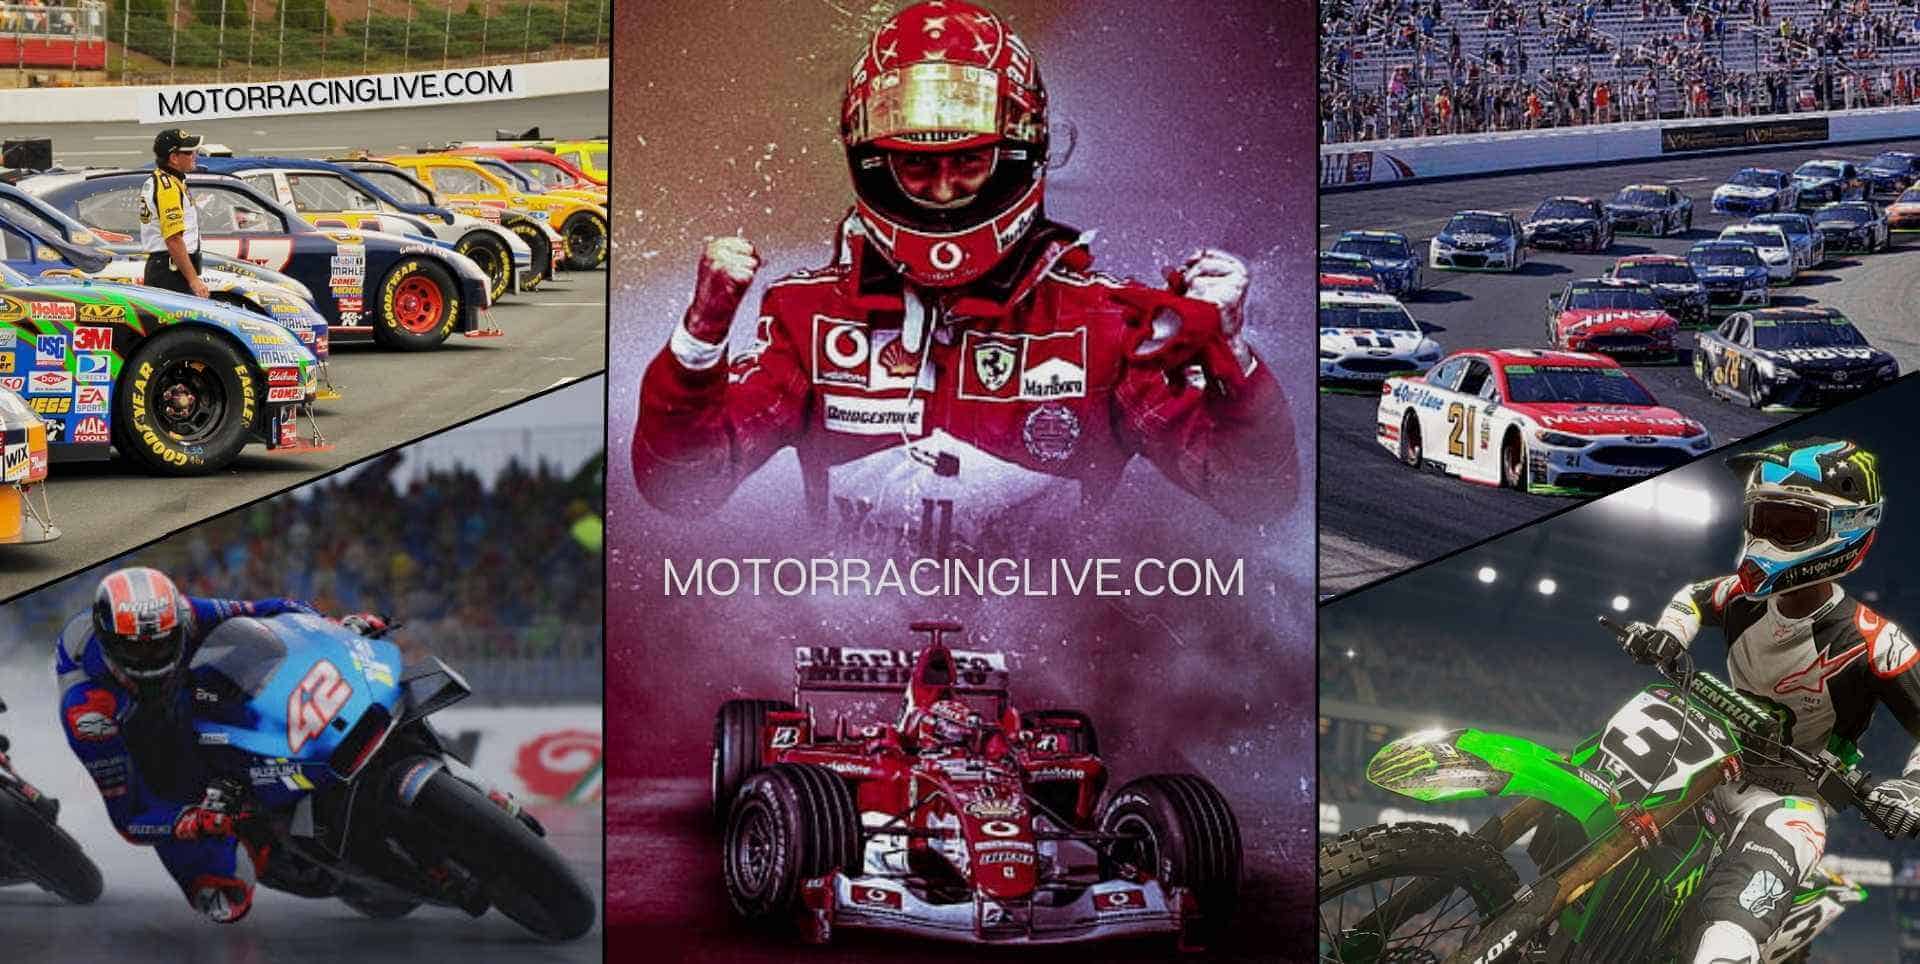 F1 Saudi Arabian GP Live Stream